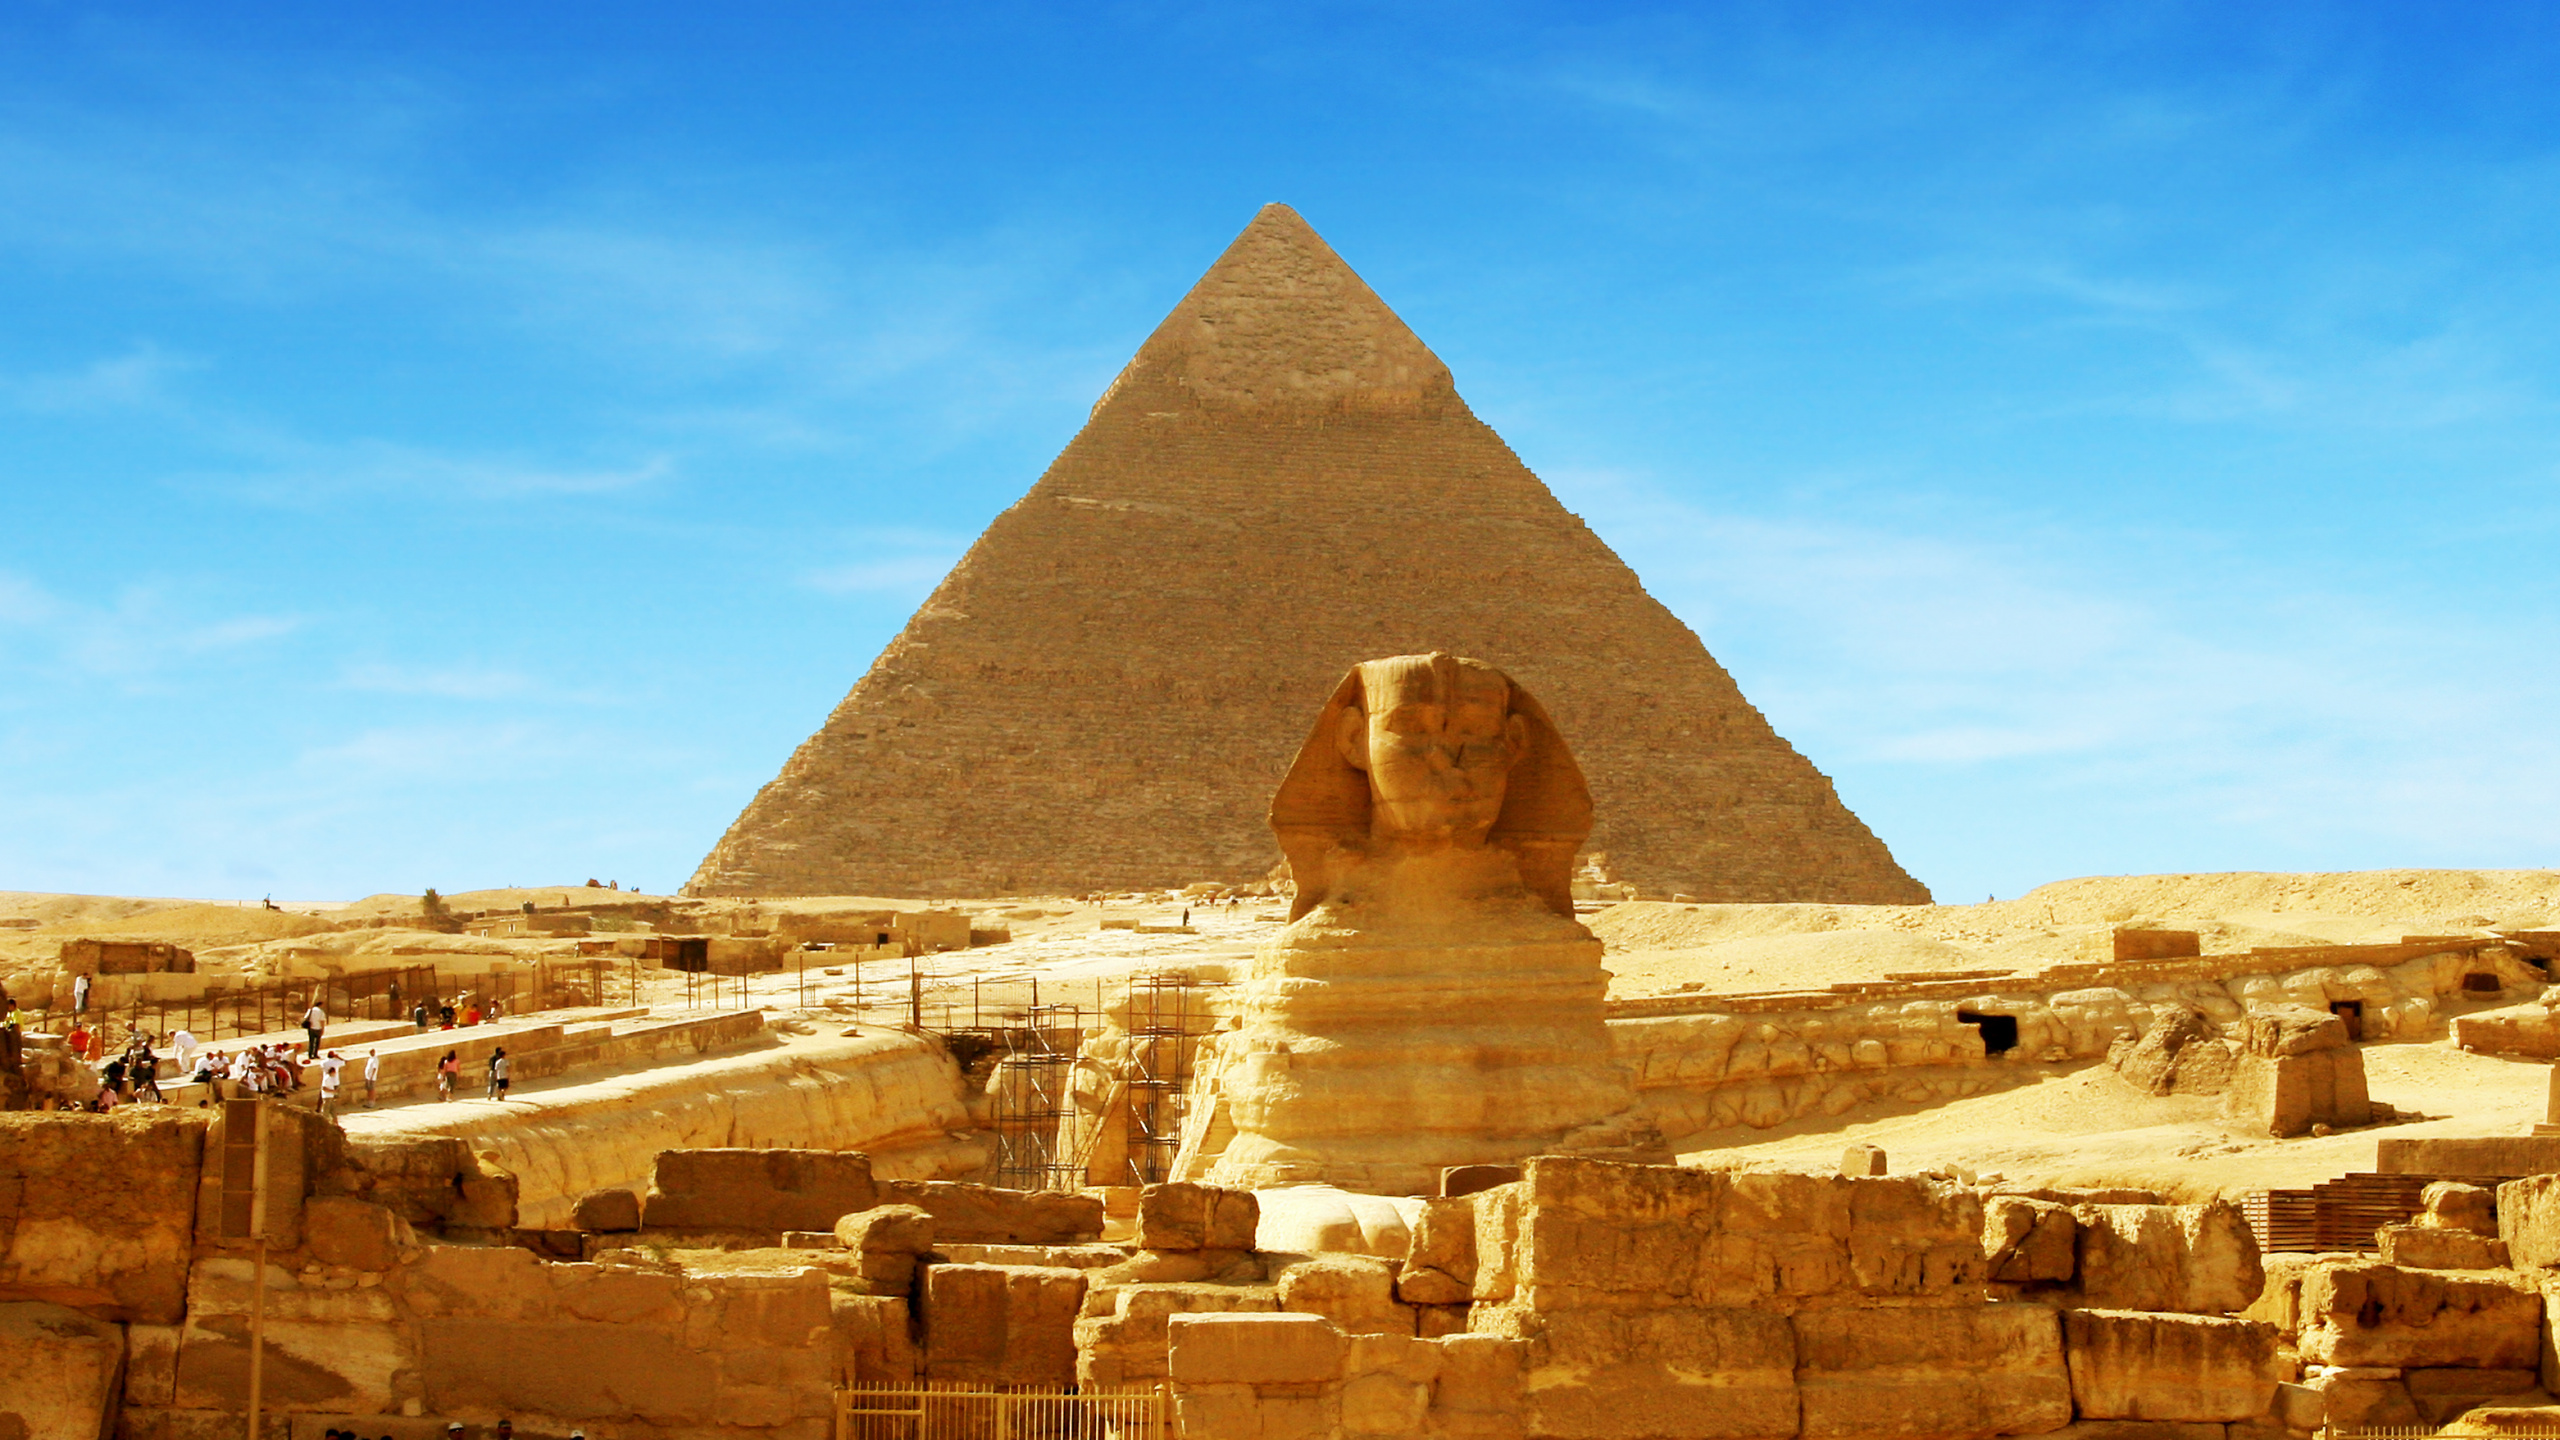 吉萨的大狮身人面像, 金字塔, 古代历史, 历史站, 里程碑 壁纸 2560x1440 允许